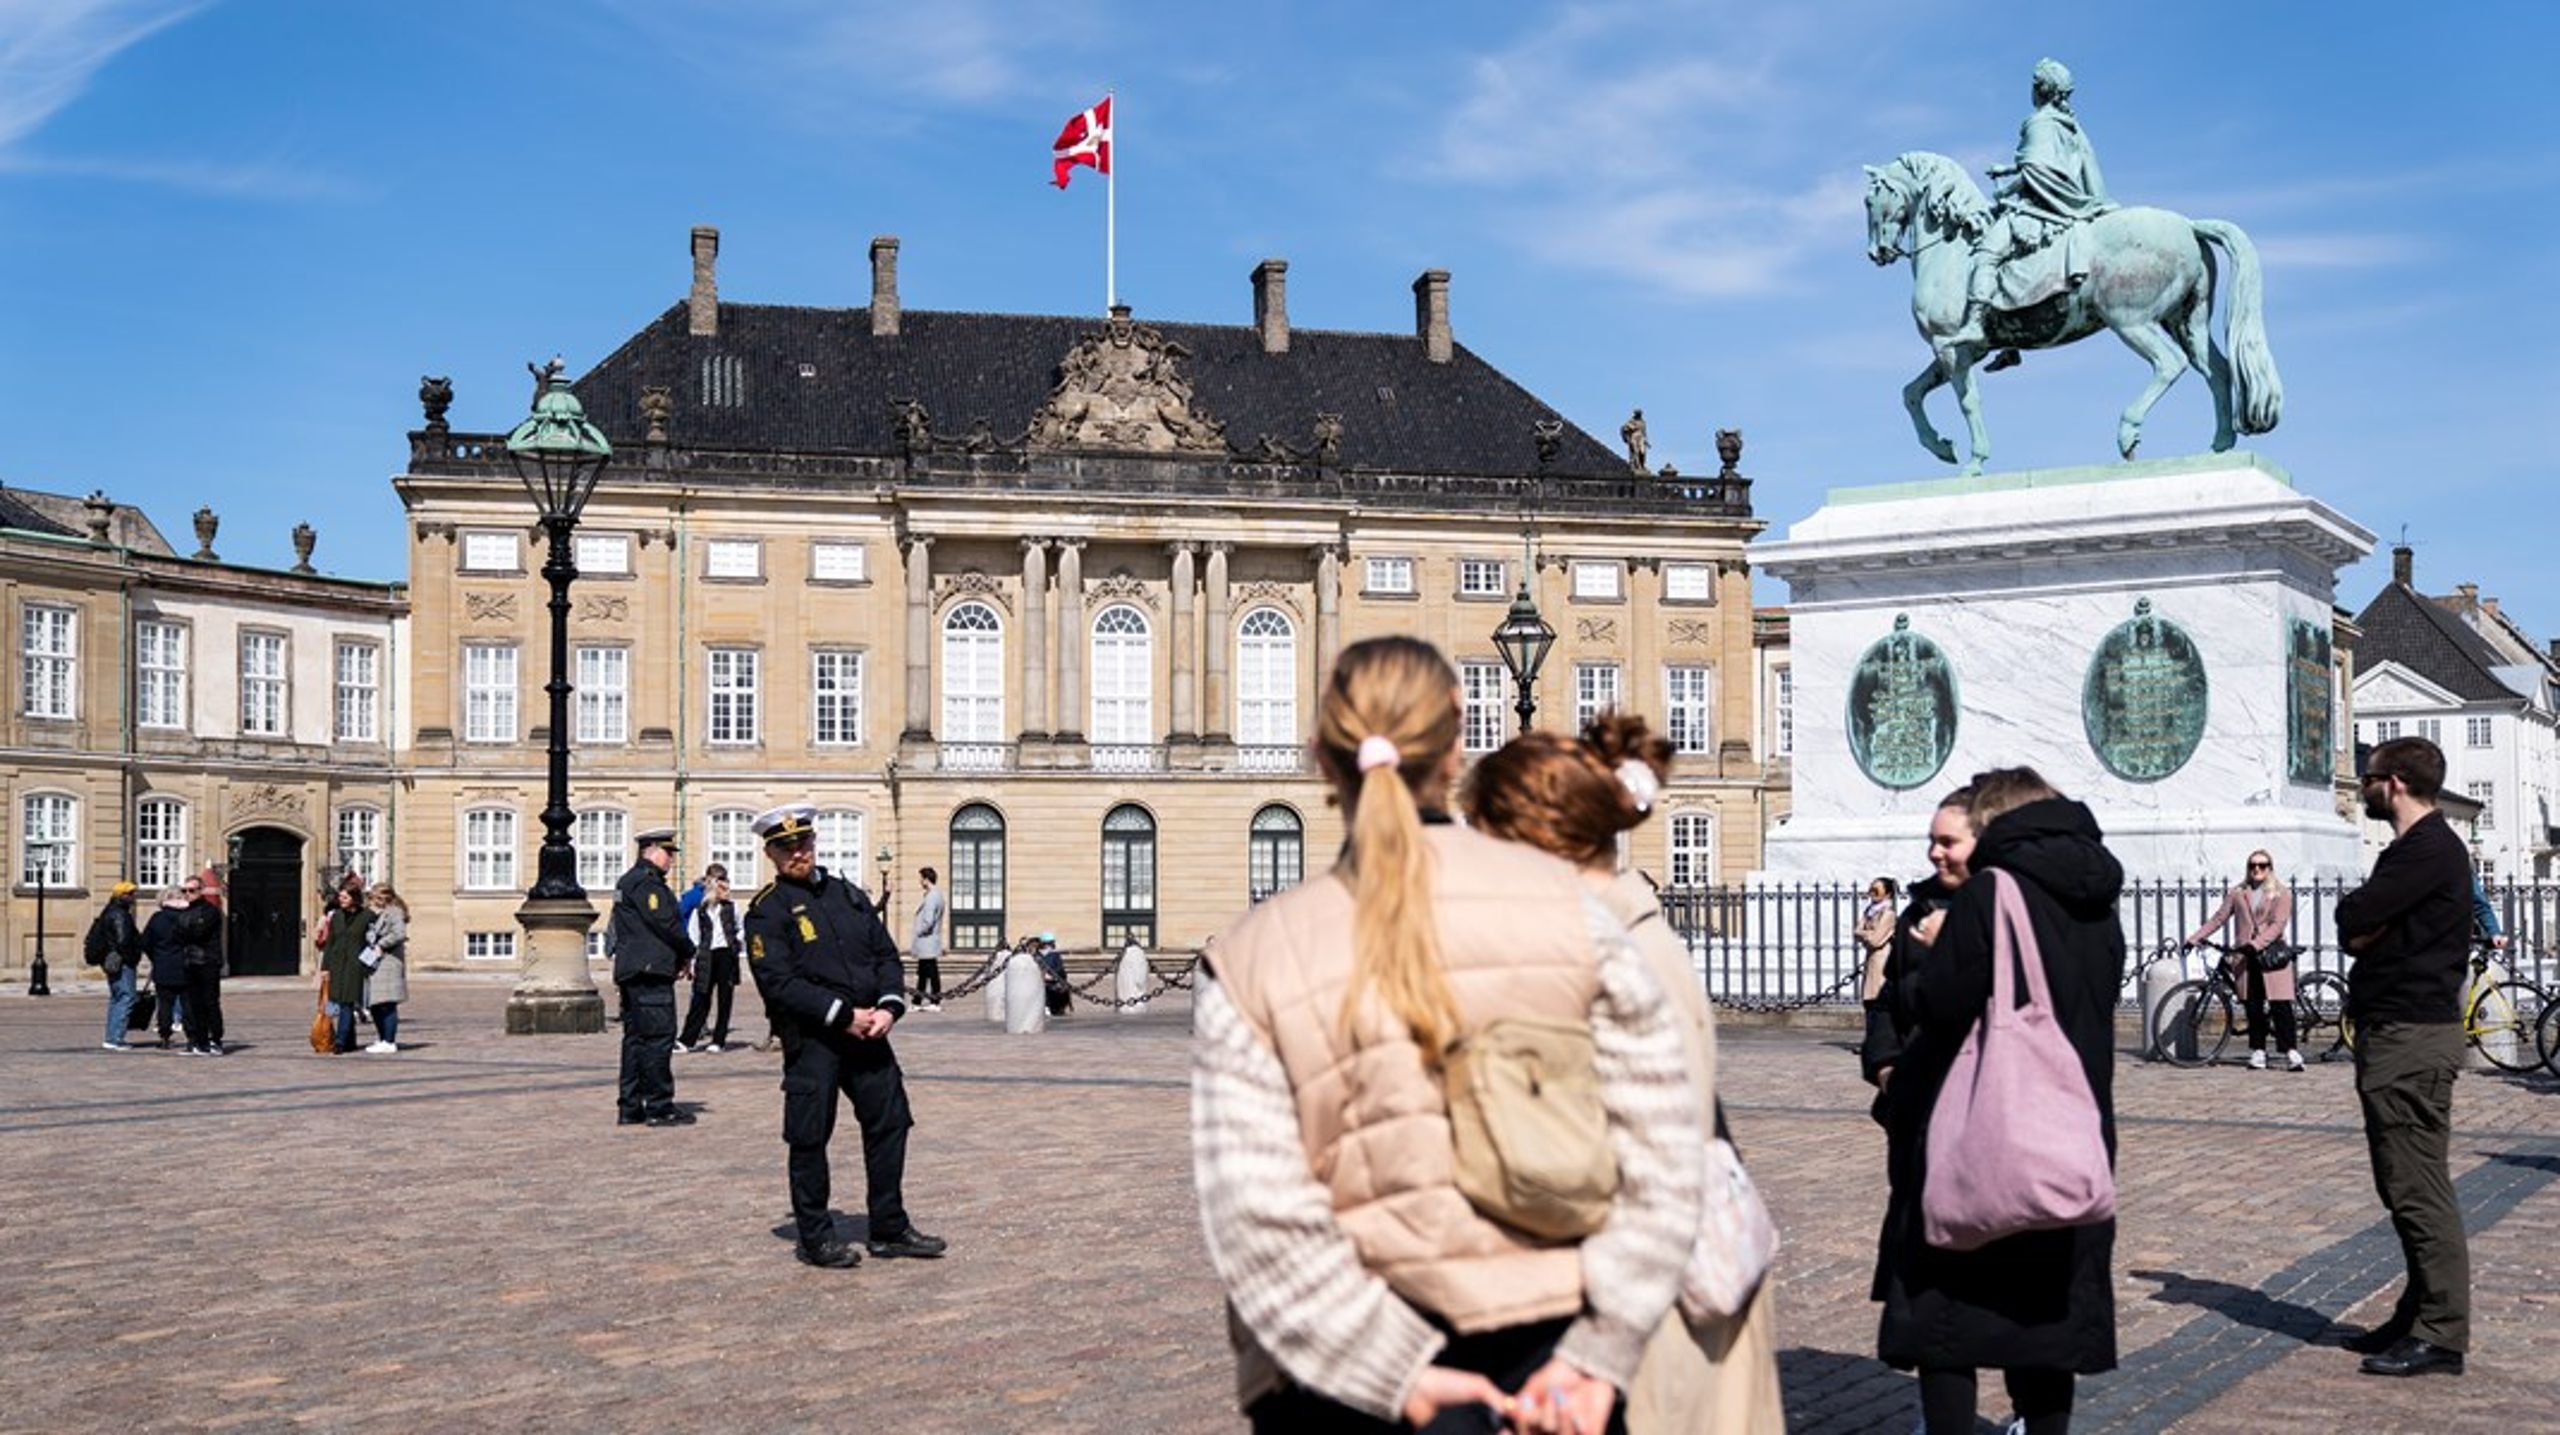 Terrorsikringen ved Amalienborg Slotsplads skal sørge for, at biler og andre køretøjer ikke har adgang til pladsen, når der er store forsamlinger af mennesker.